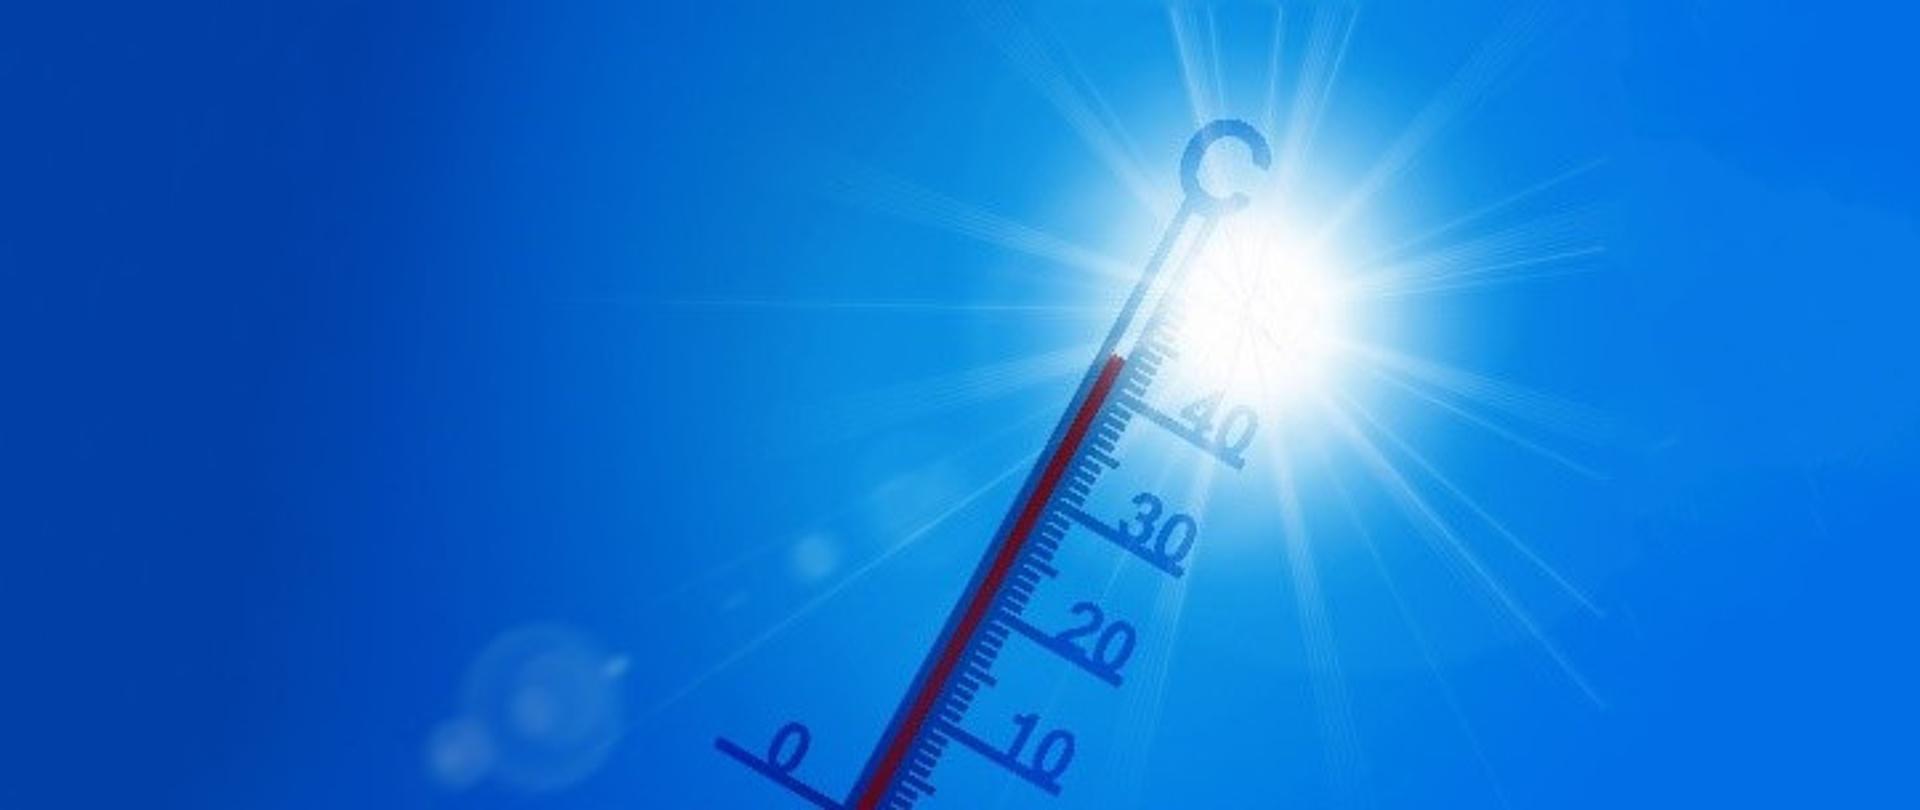 Na tle niebieskiego nieba i słońca termometr rtęciowy wskazujący ponad 40 stopni Celsjusza